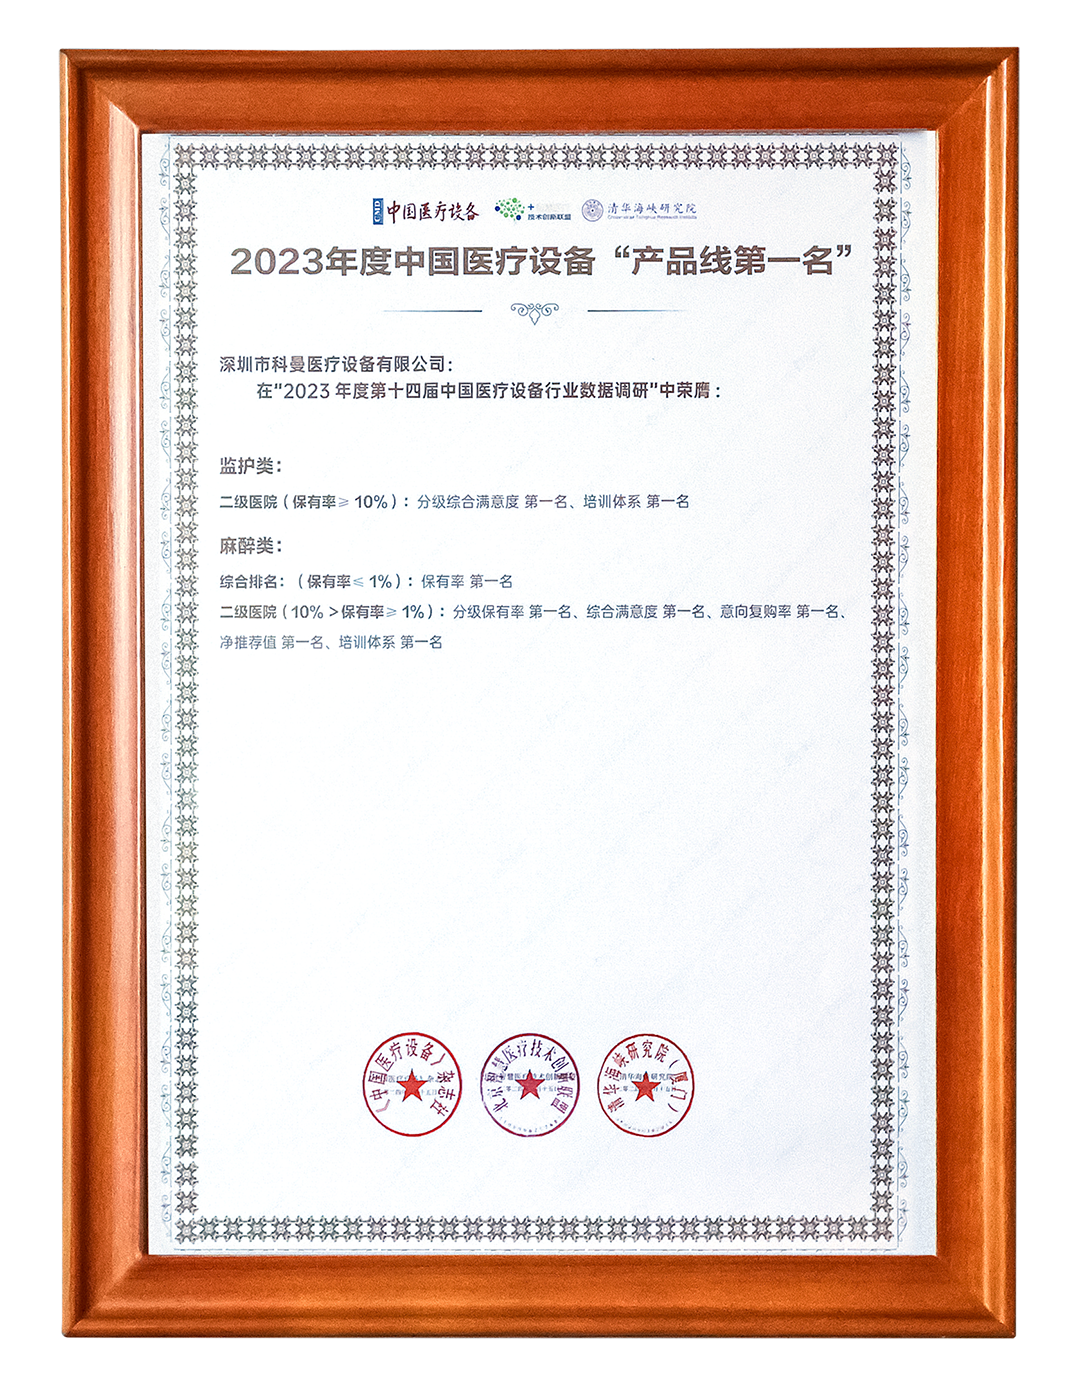 美狮贵宾会立异不止！科曼医疗再获年度中国医疗装备民族品牌金奖+产物线第一位(图2)